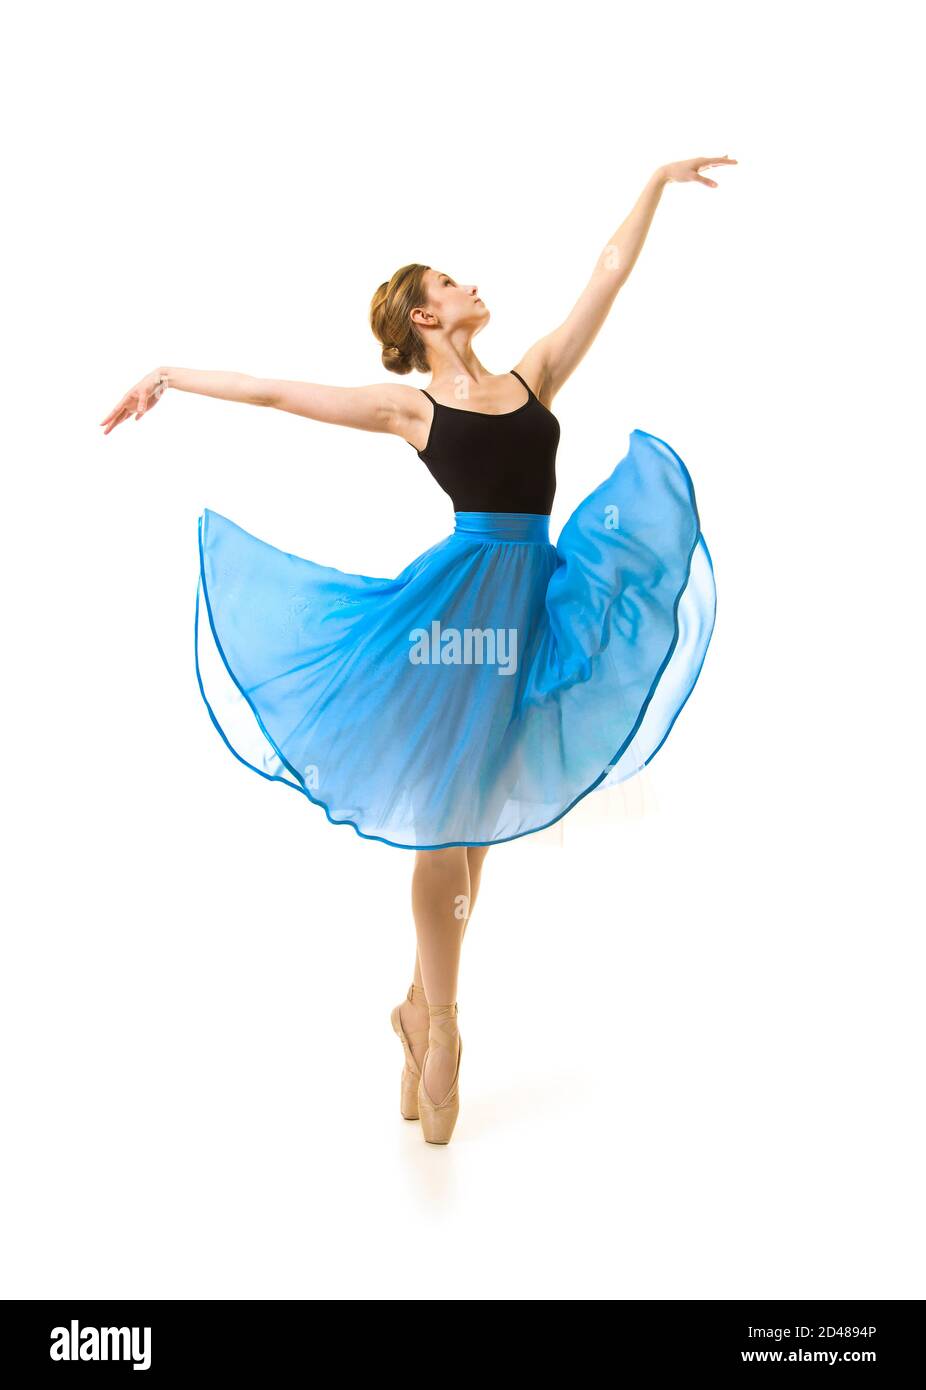 Niña Como Una Bailarina De Ballet En El Tutú Azul, Aislados En Fondo Blanco  Fotos, retratos, imágenes y fotografía de archivo libres de derecho. Image  16898266